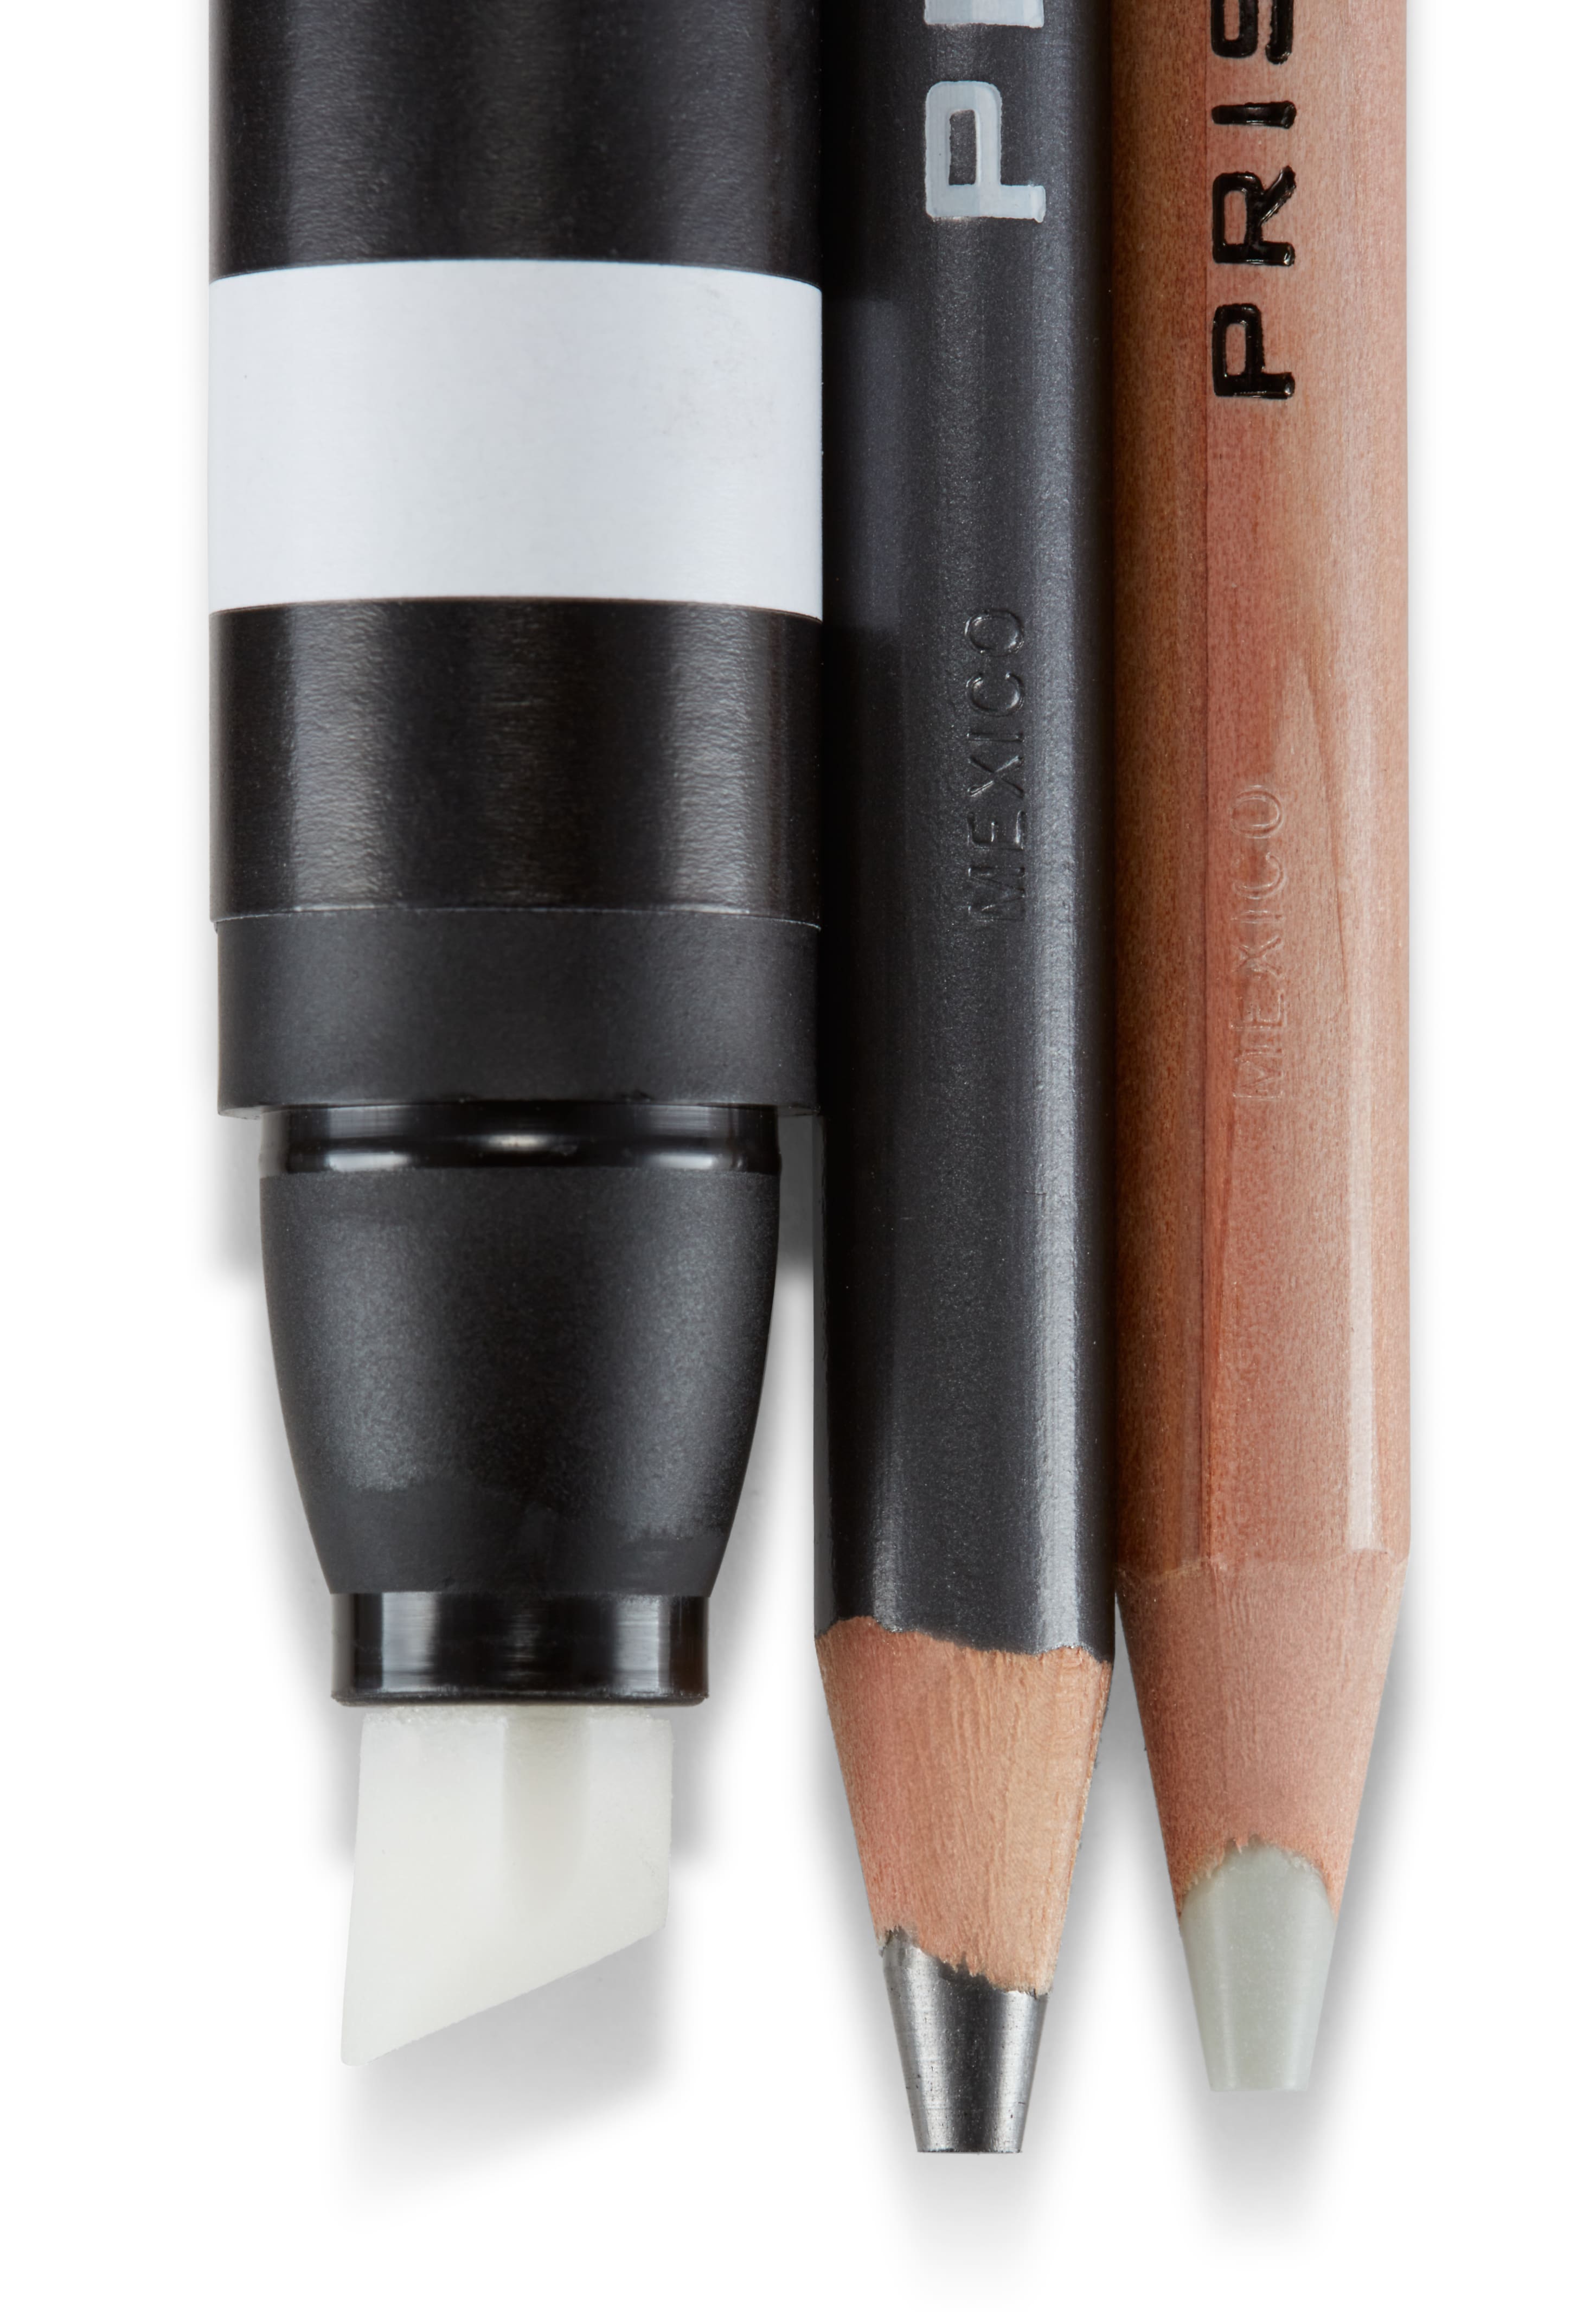 12 Pack: Prismacolor Premier&#xAE; Colored Pencil Accessory Set